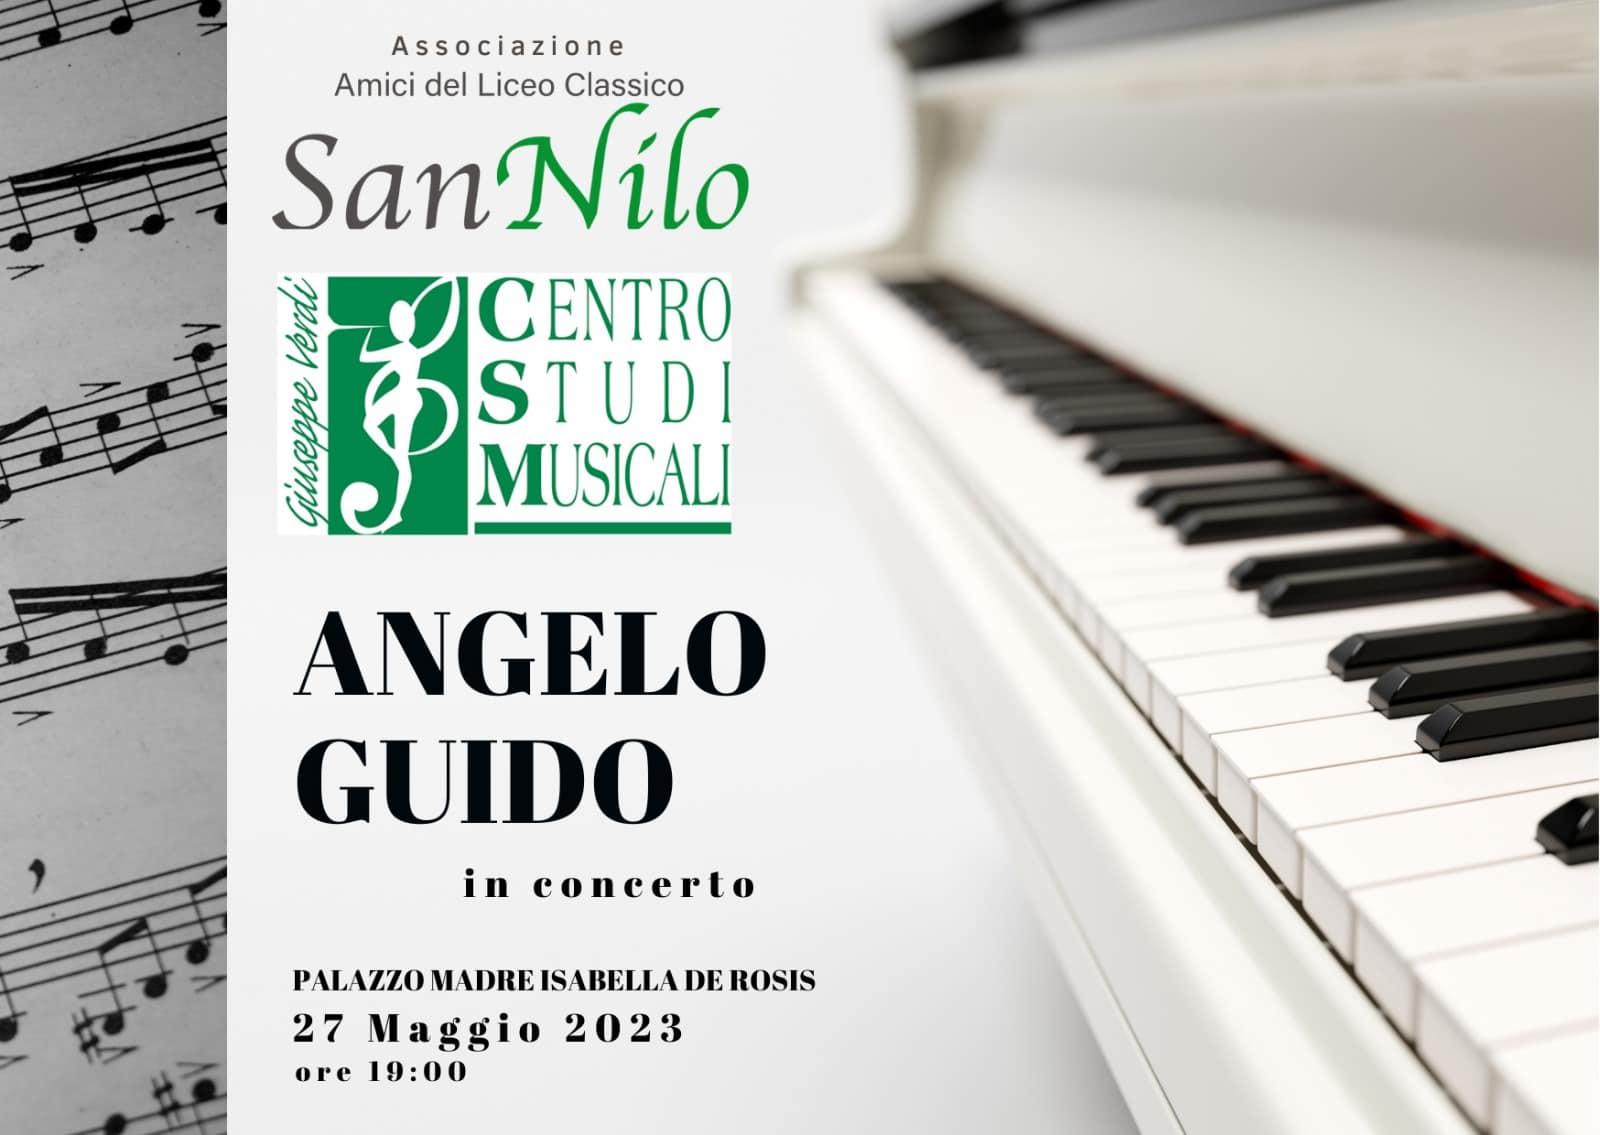 Recital del Maestro Angelo Guido per il sito Amici San Nilo